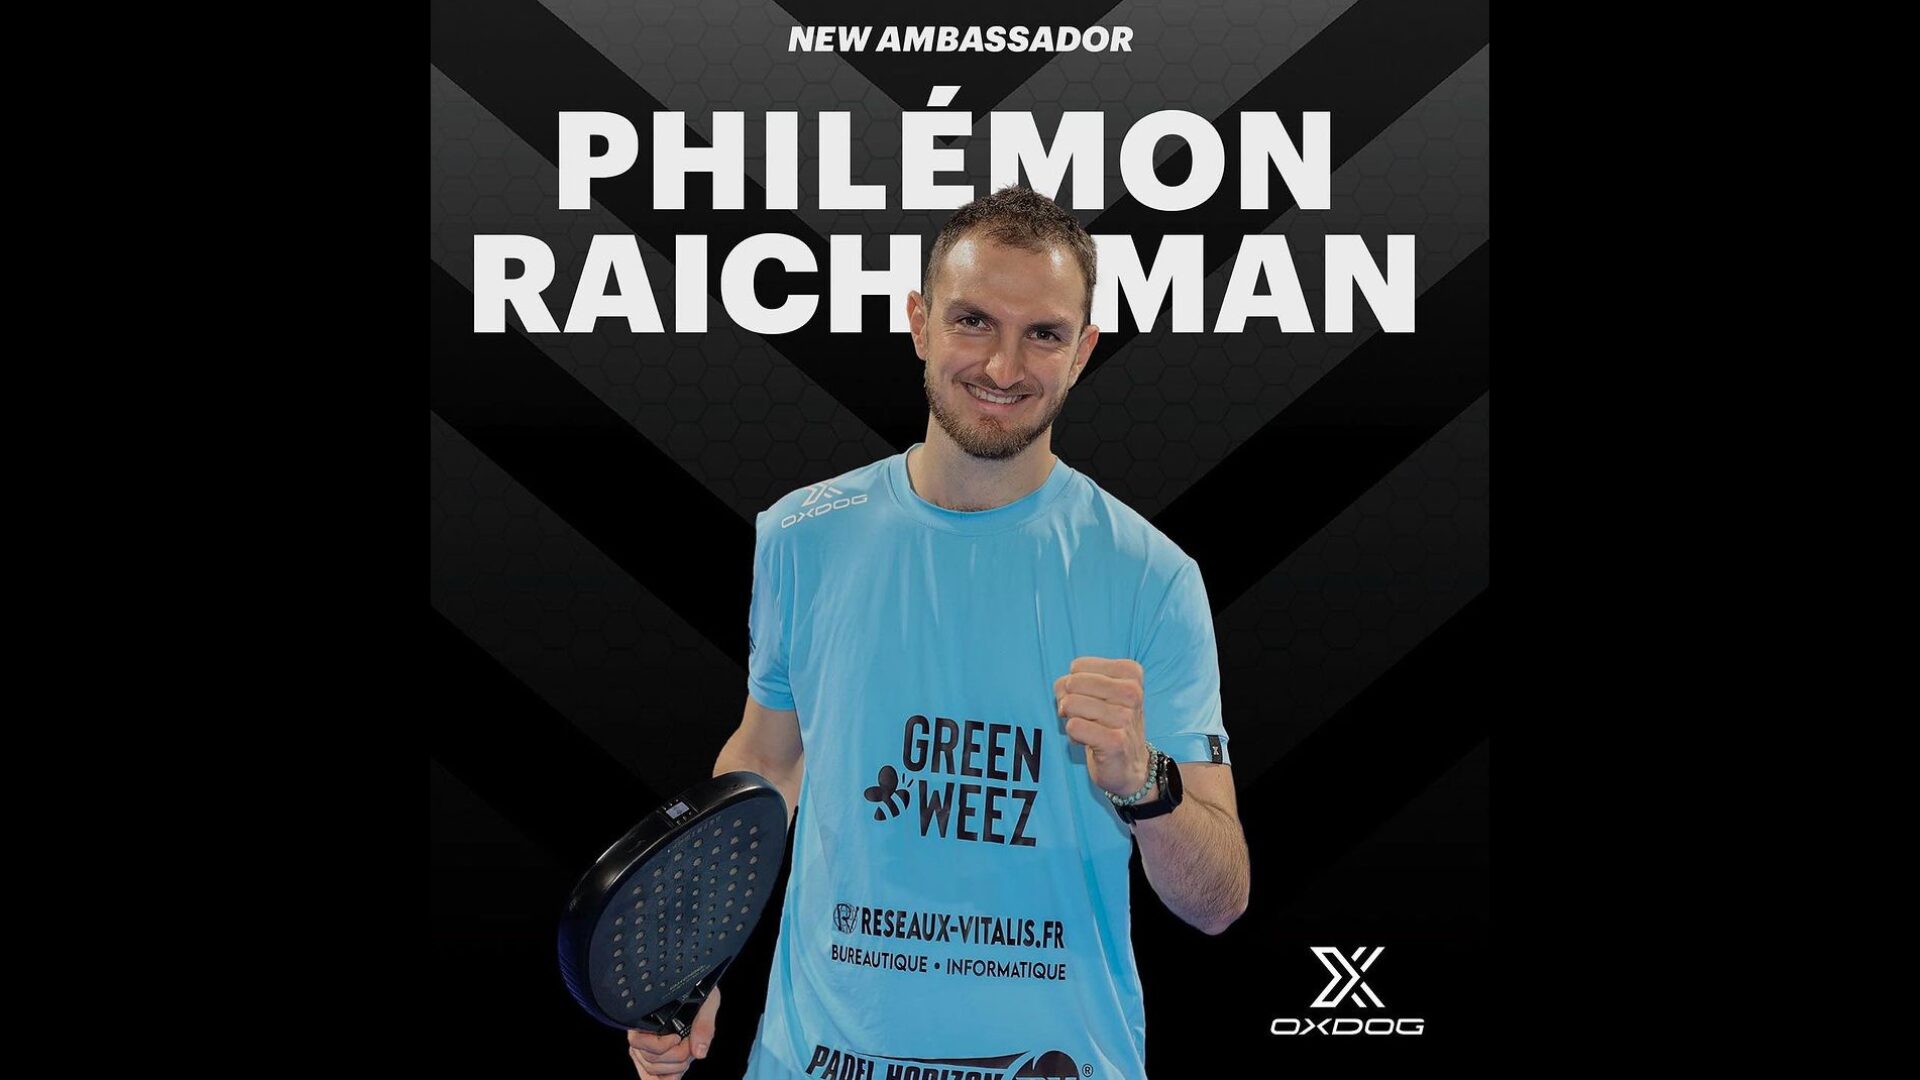 Philémon Raichman voegt zich bij het team Oxdog